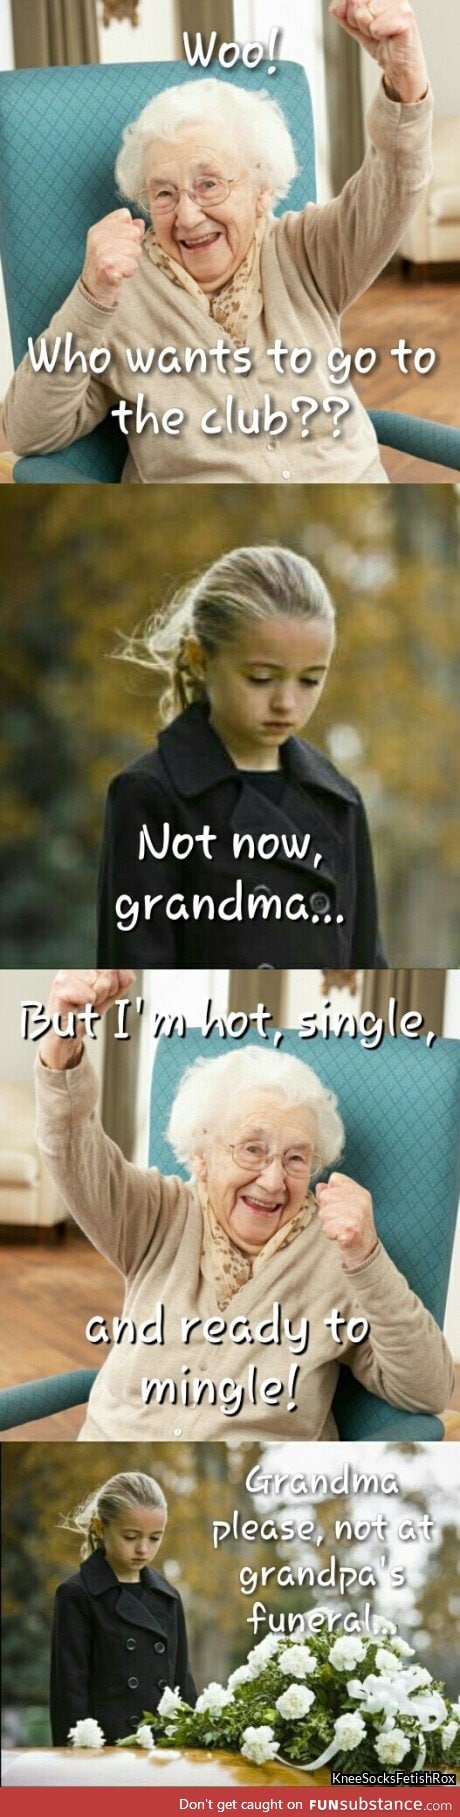 You do you, grandma!